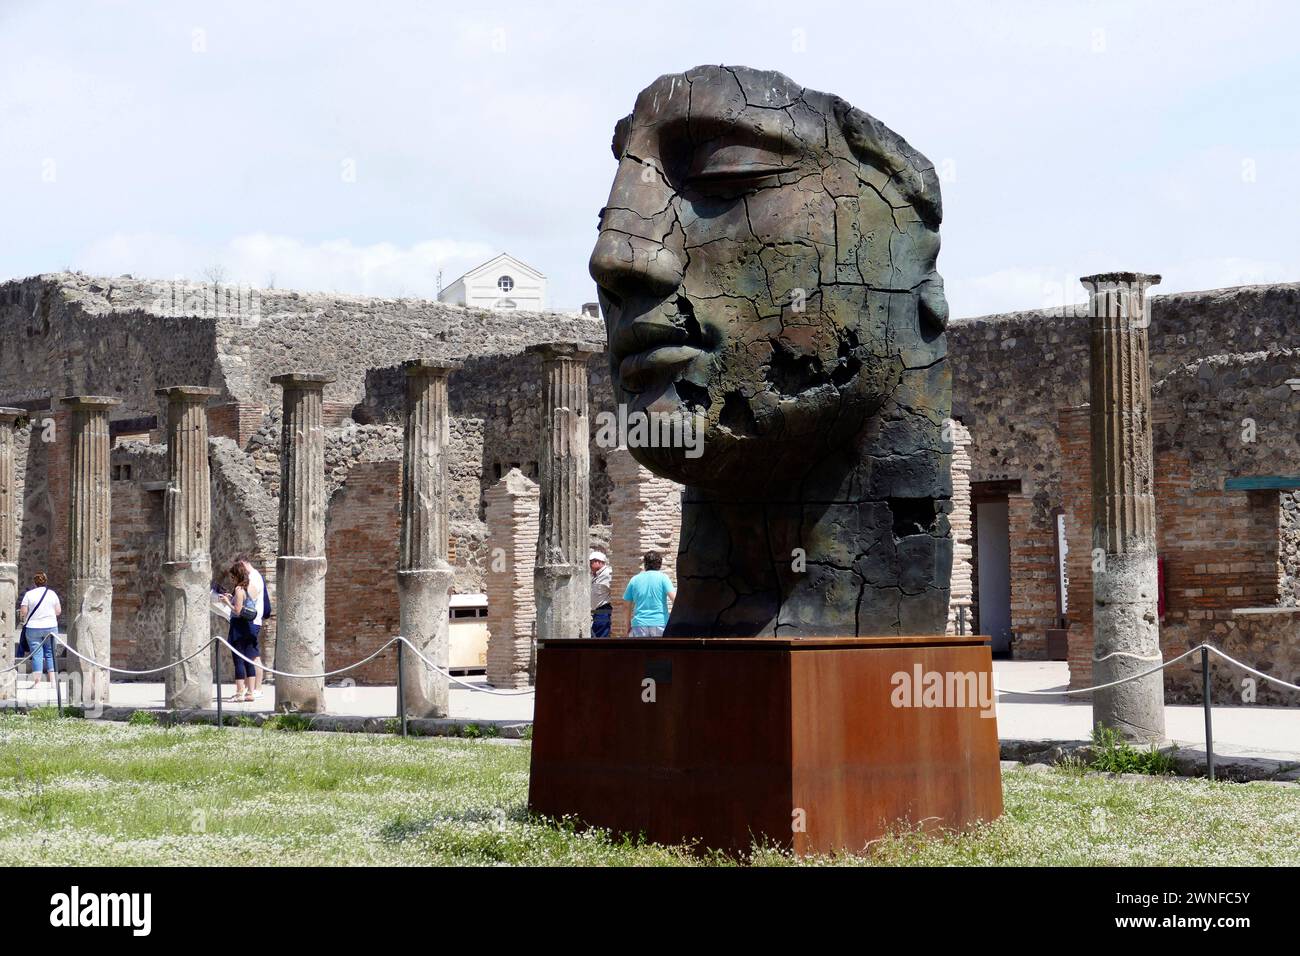 Pompeji, Italien - 25. Mai 2016 - Tourist in berühmten antiken Ruinen der Stadt Pompeji, Italien. Pompeji wurde zerstört und mit Asche und Bimsstein begraben Stockfoto